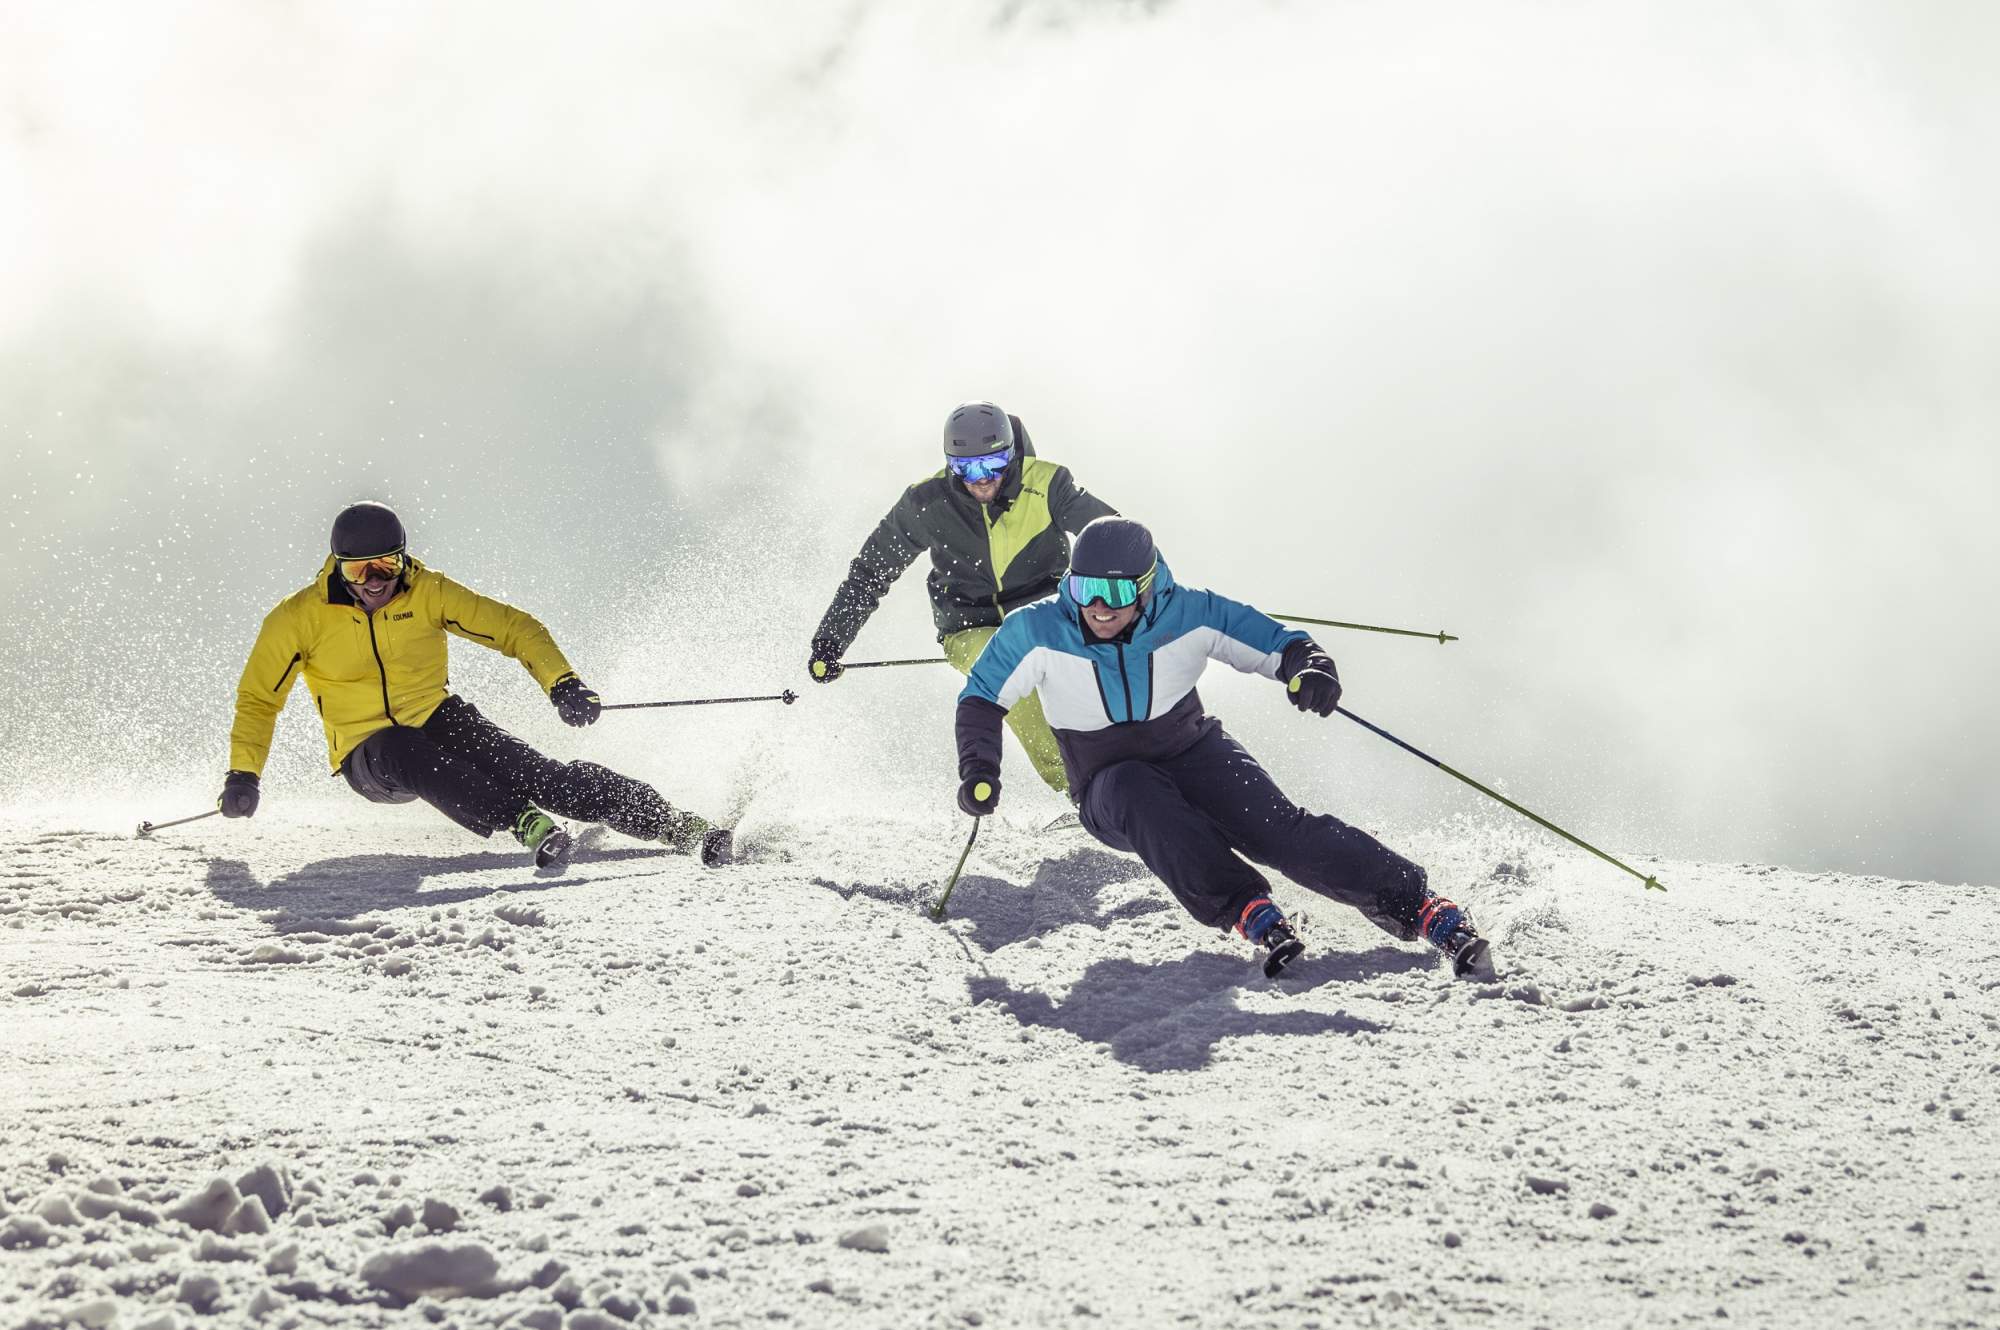 Горные лыжи Elan Amphibio 10Ti Powershift + El 10 GW Shift 2021, black/green, 160 см